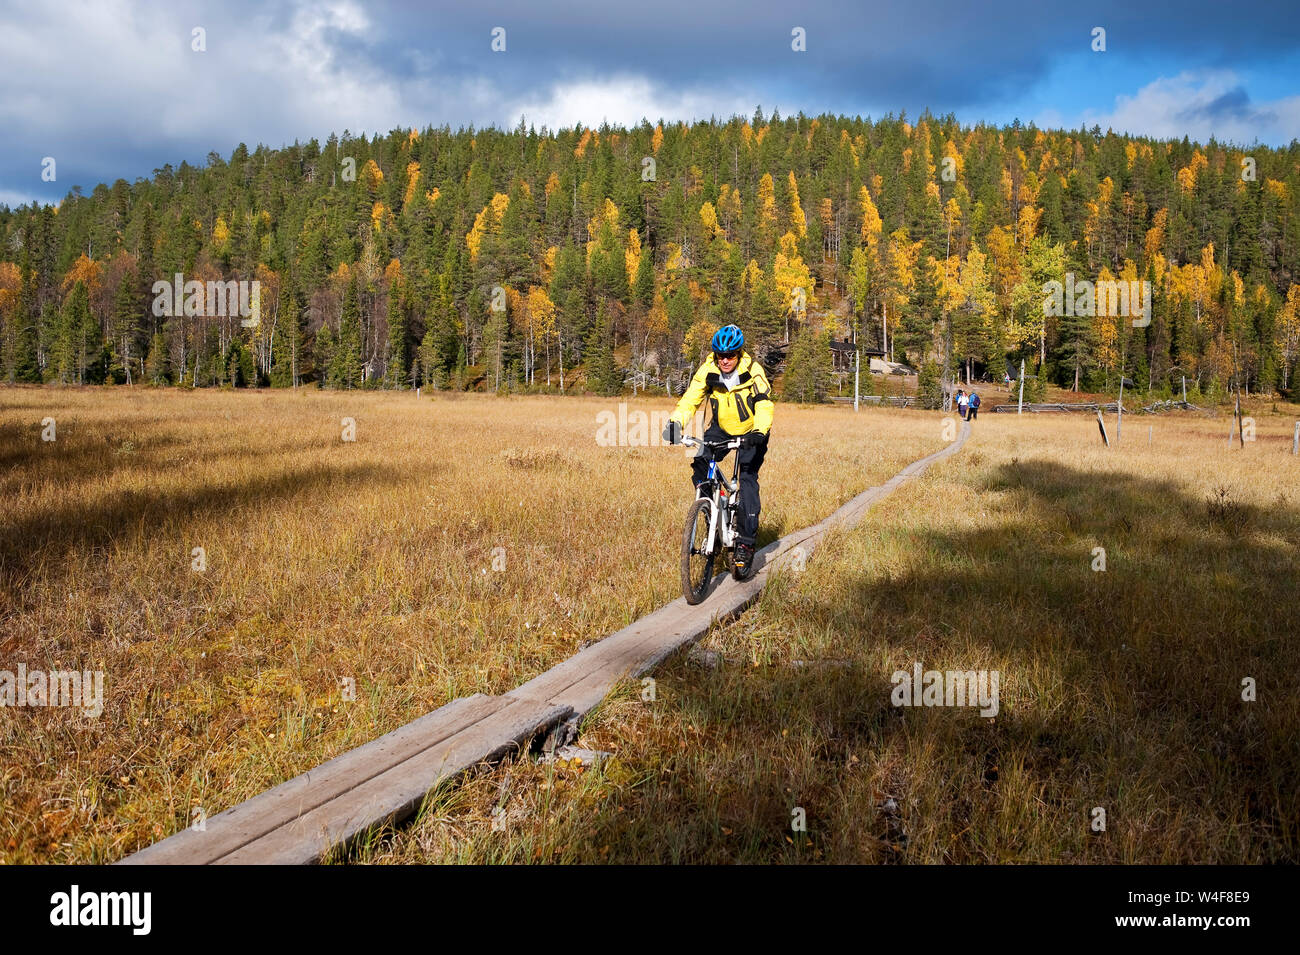 Radfahren im Park, Taigawald, Ruska Zeit (Herbst), Pallas-Yllastunturi Nationalpark, Lappland, Finnland Stockfoto